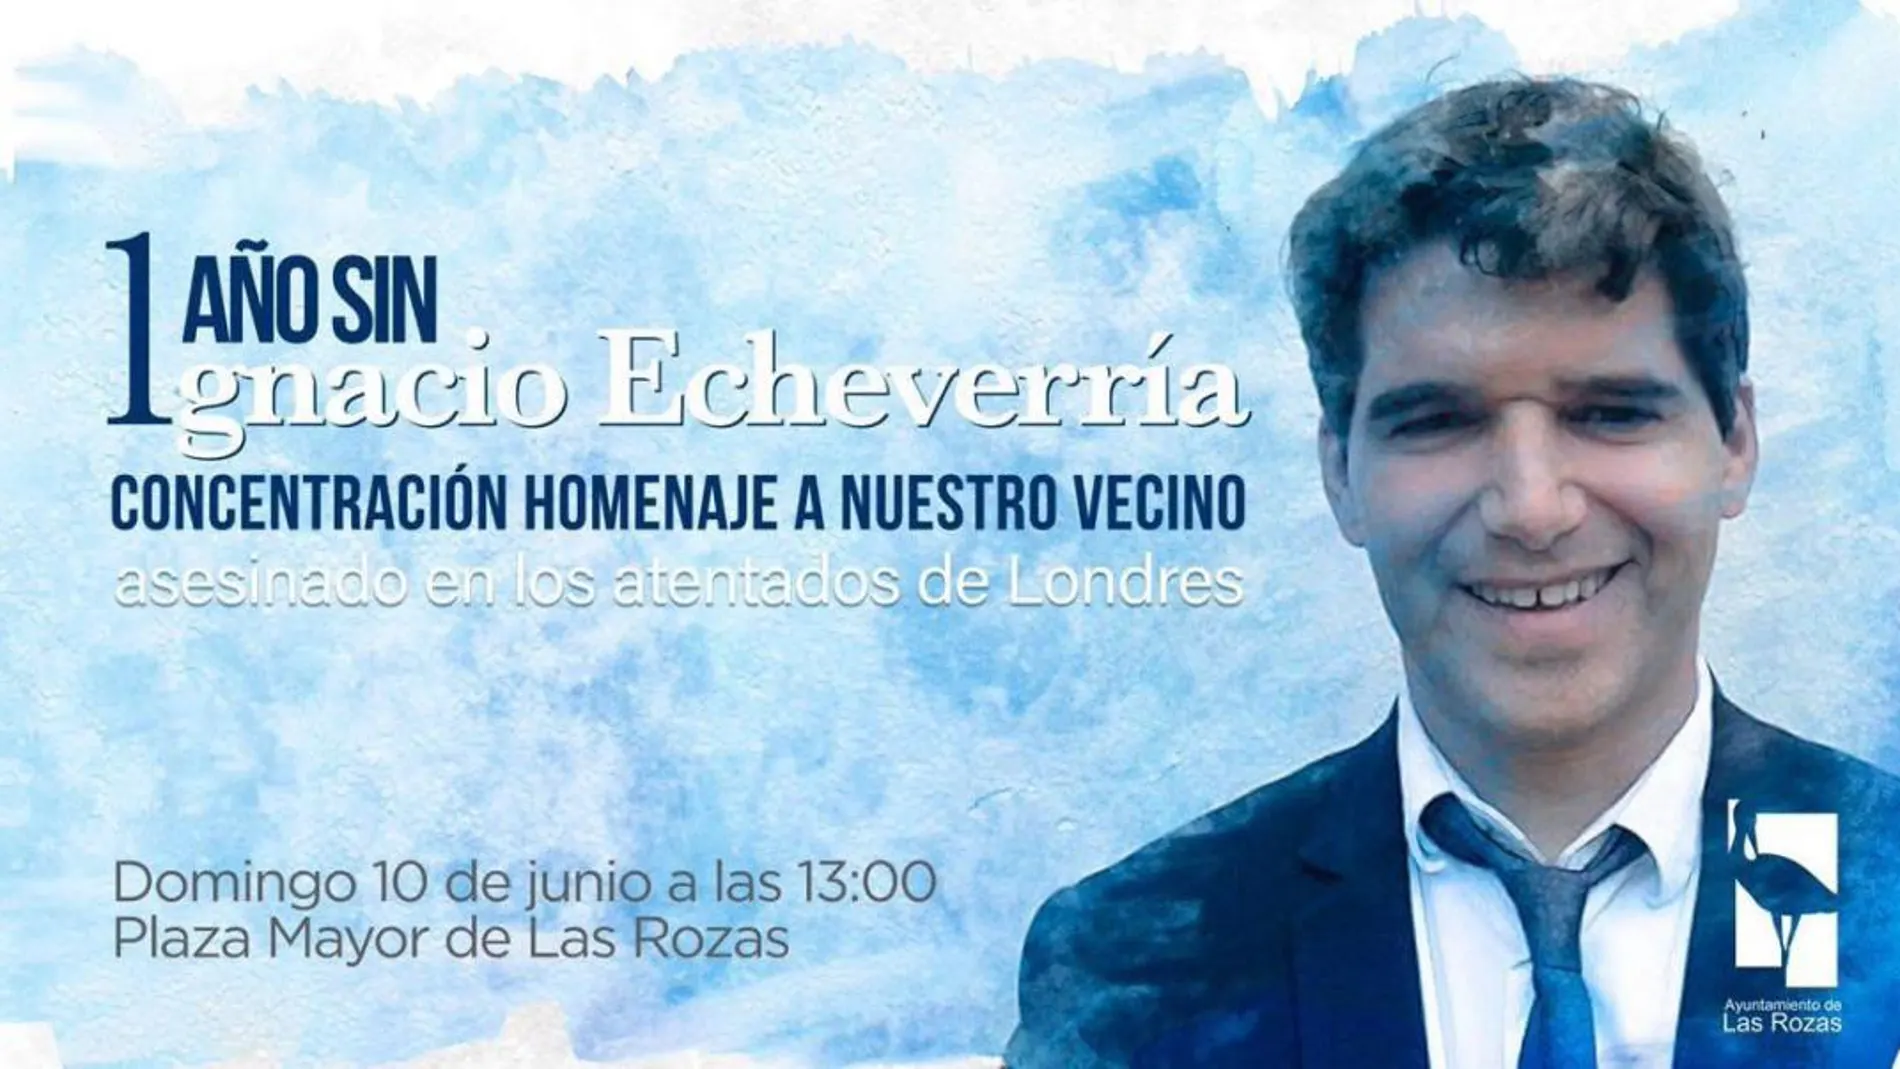 Las Rozas homenajeará a Ignacio Echeverría